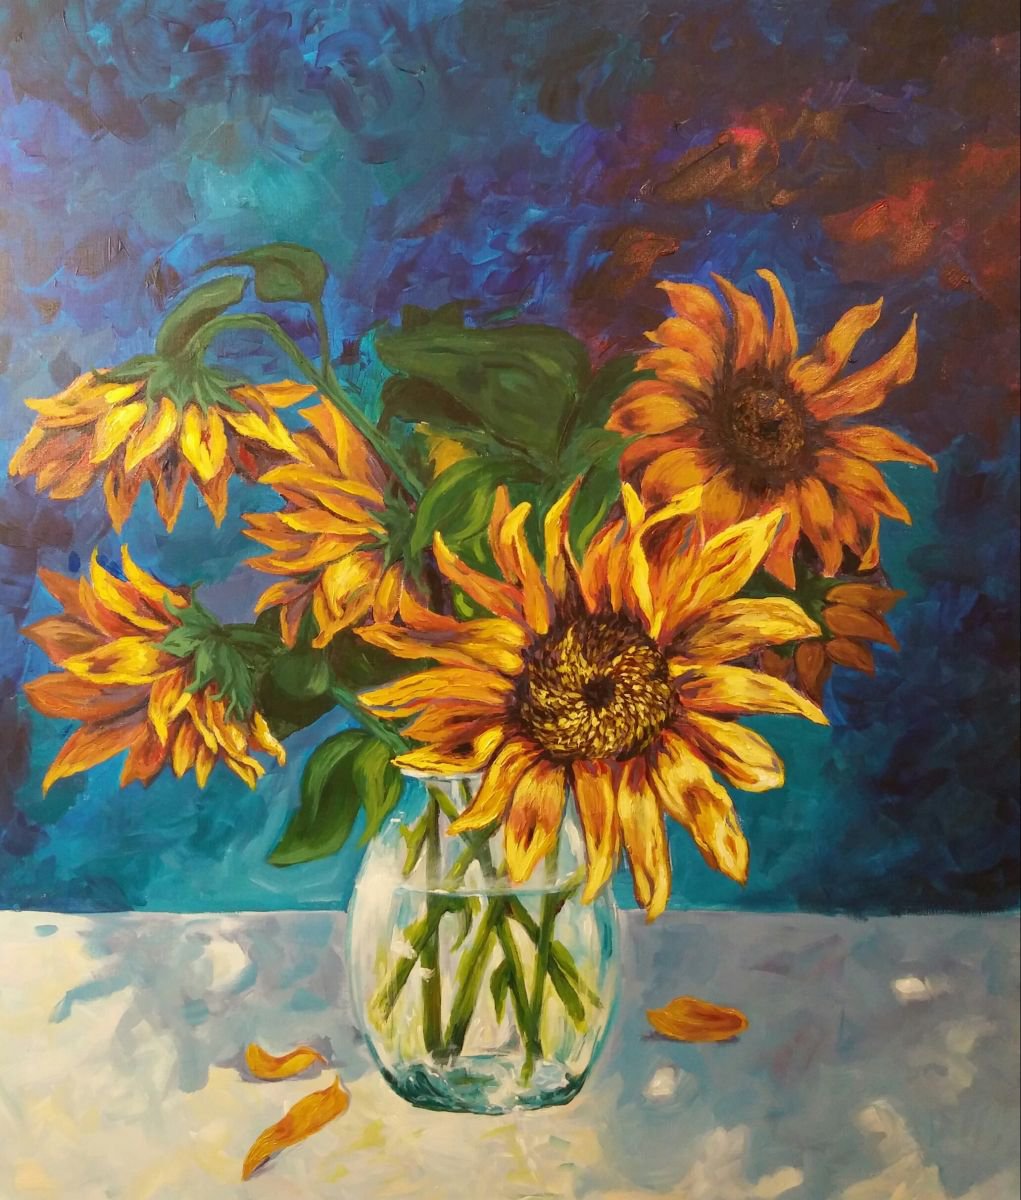 Sunflowers, acrylic on canvas, 60x70cm by Gordana